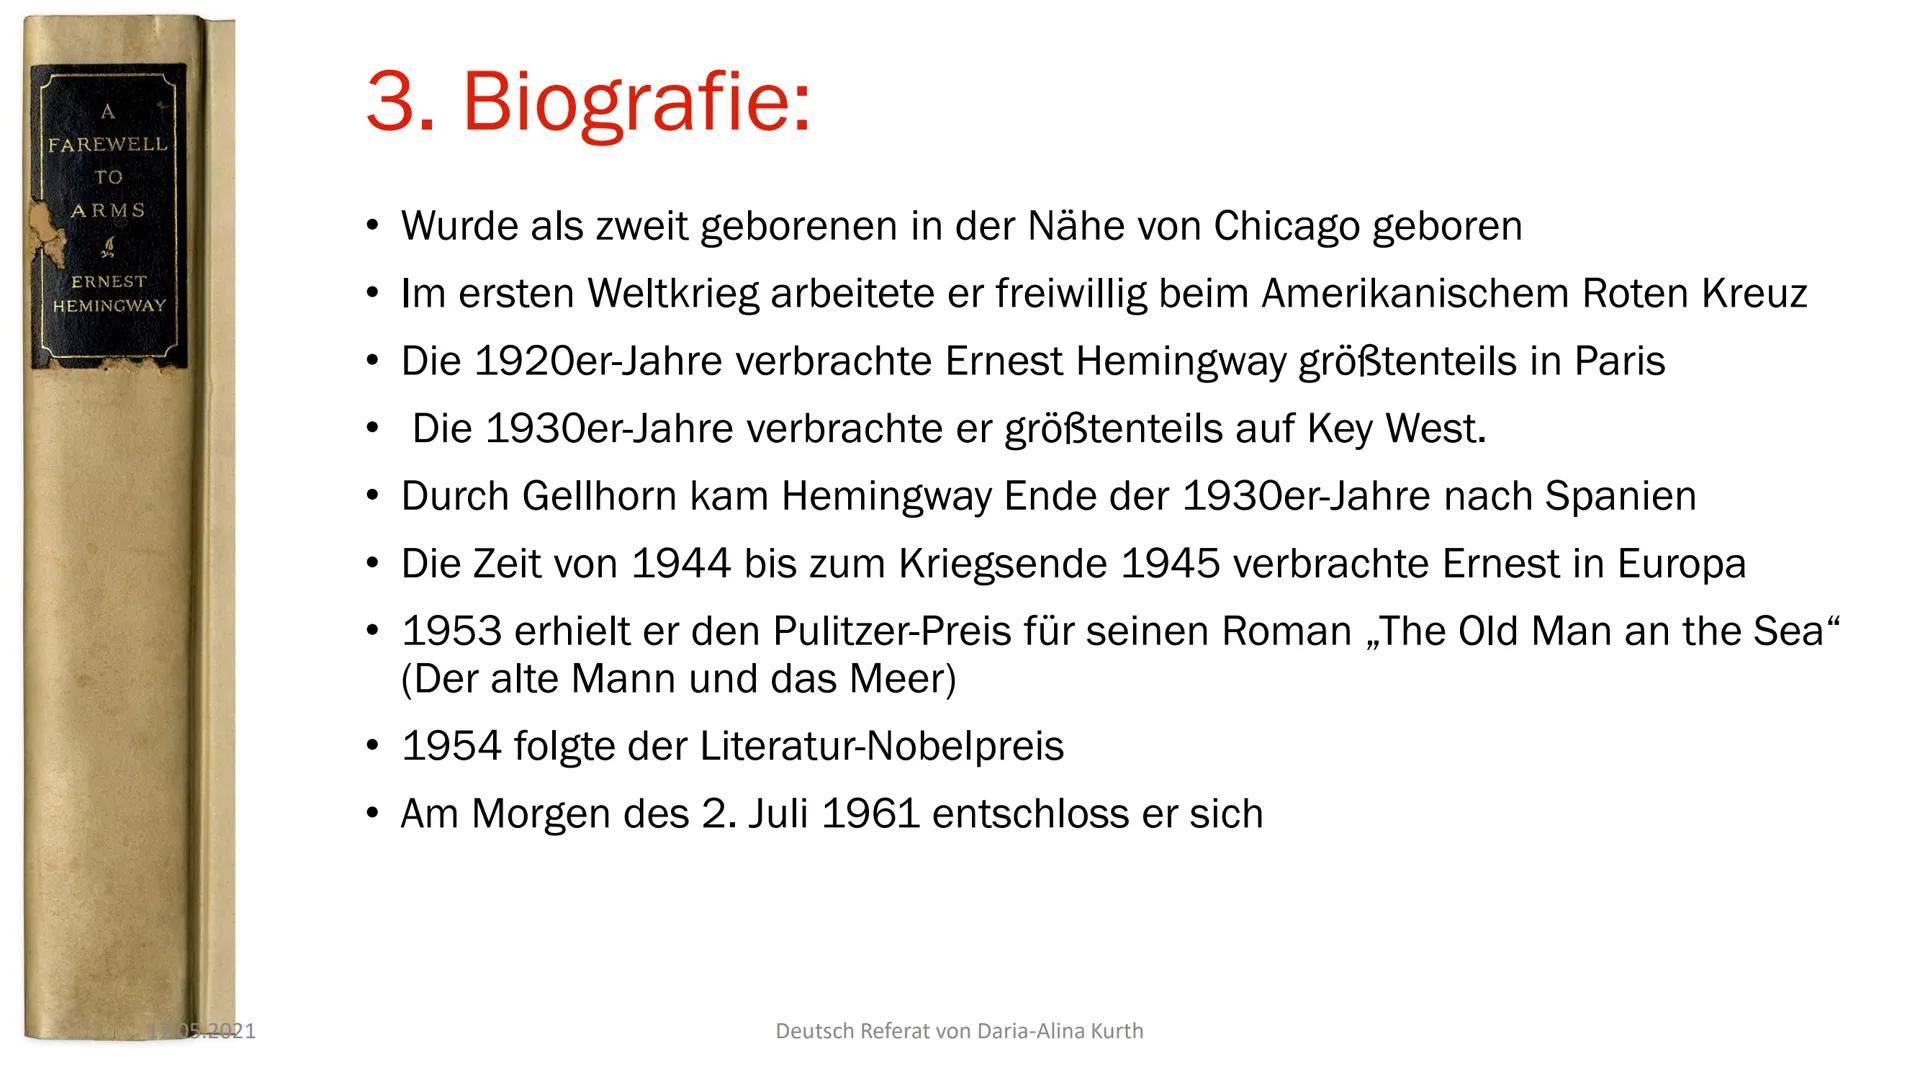 Ernest
Hemingway
- Seine Werke
Deutsch Referat von Daria-Alina Kurth Inhalt:
1. Allgemeine Informationen
2. Familie
3. Biografie
4. Seine We